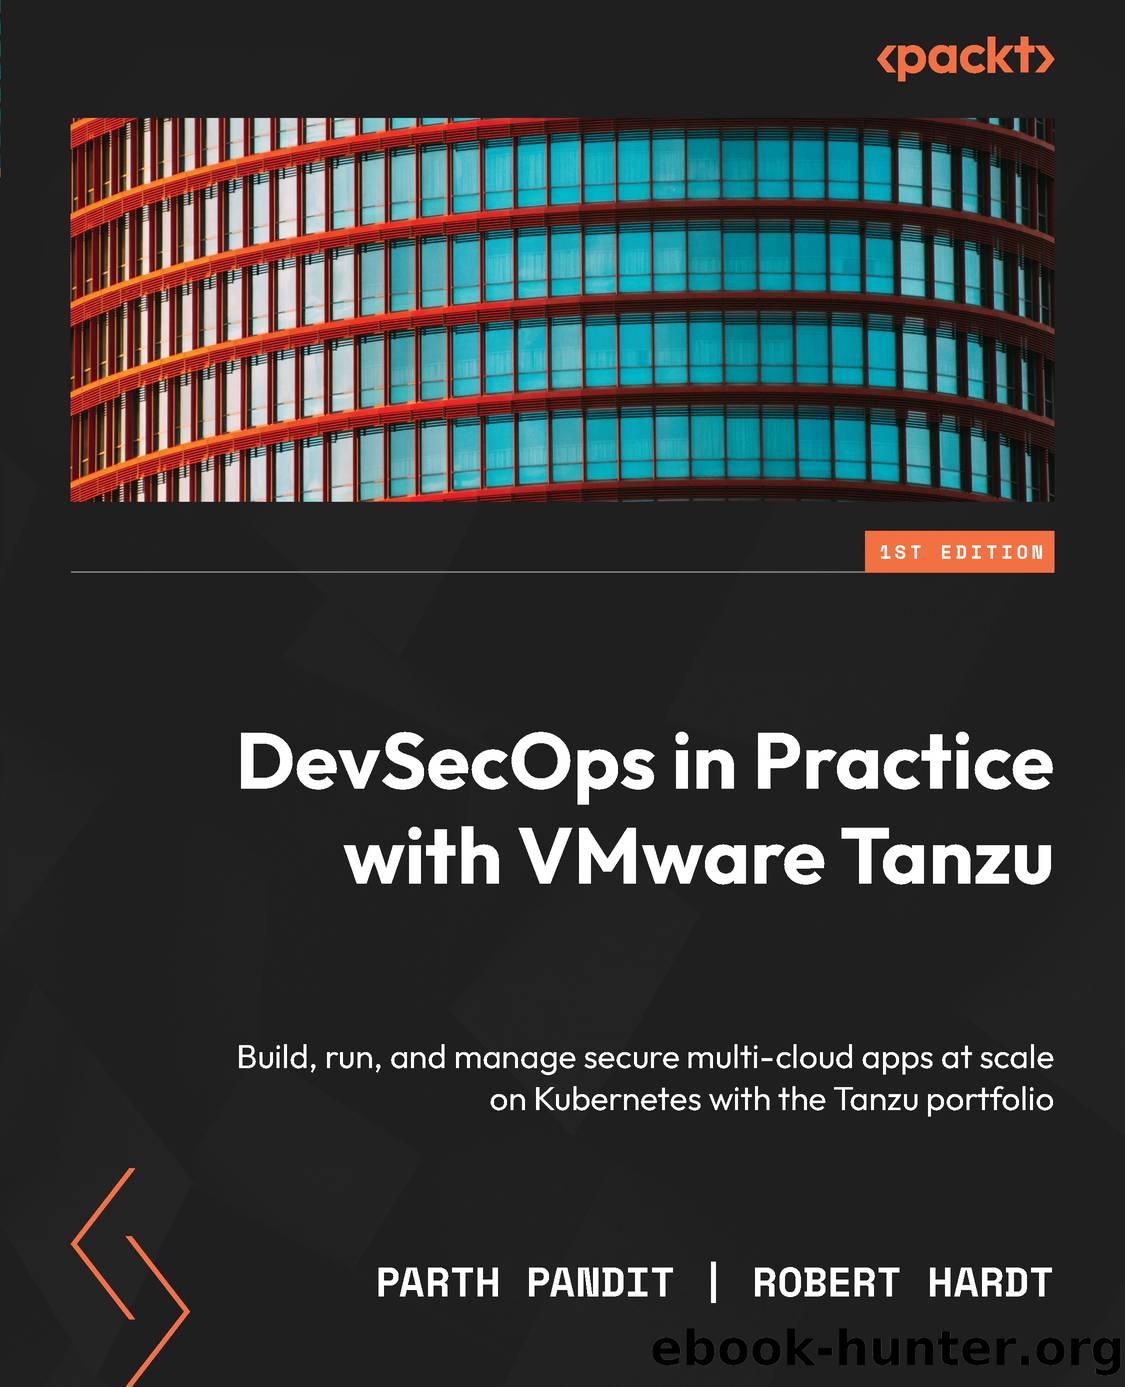 DevSecOps in Practice with VMware Tanzu by Parth Pandit & Robert Hardt